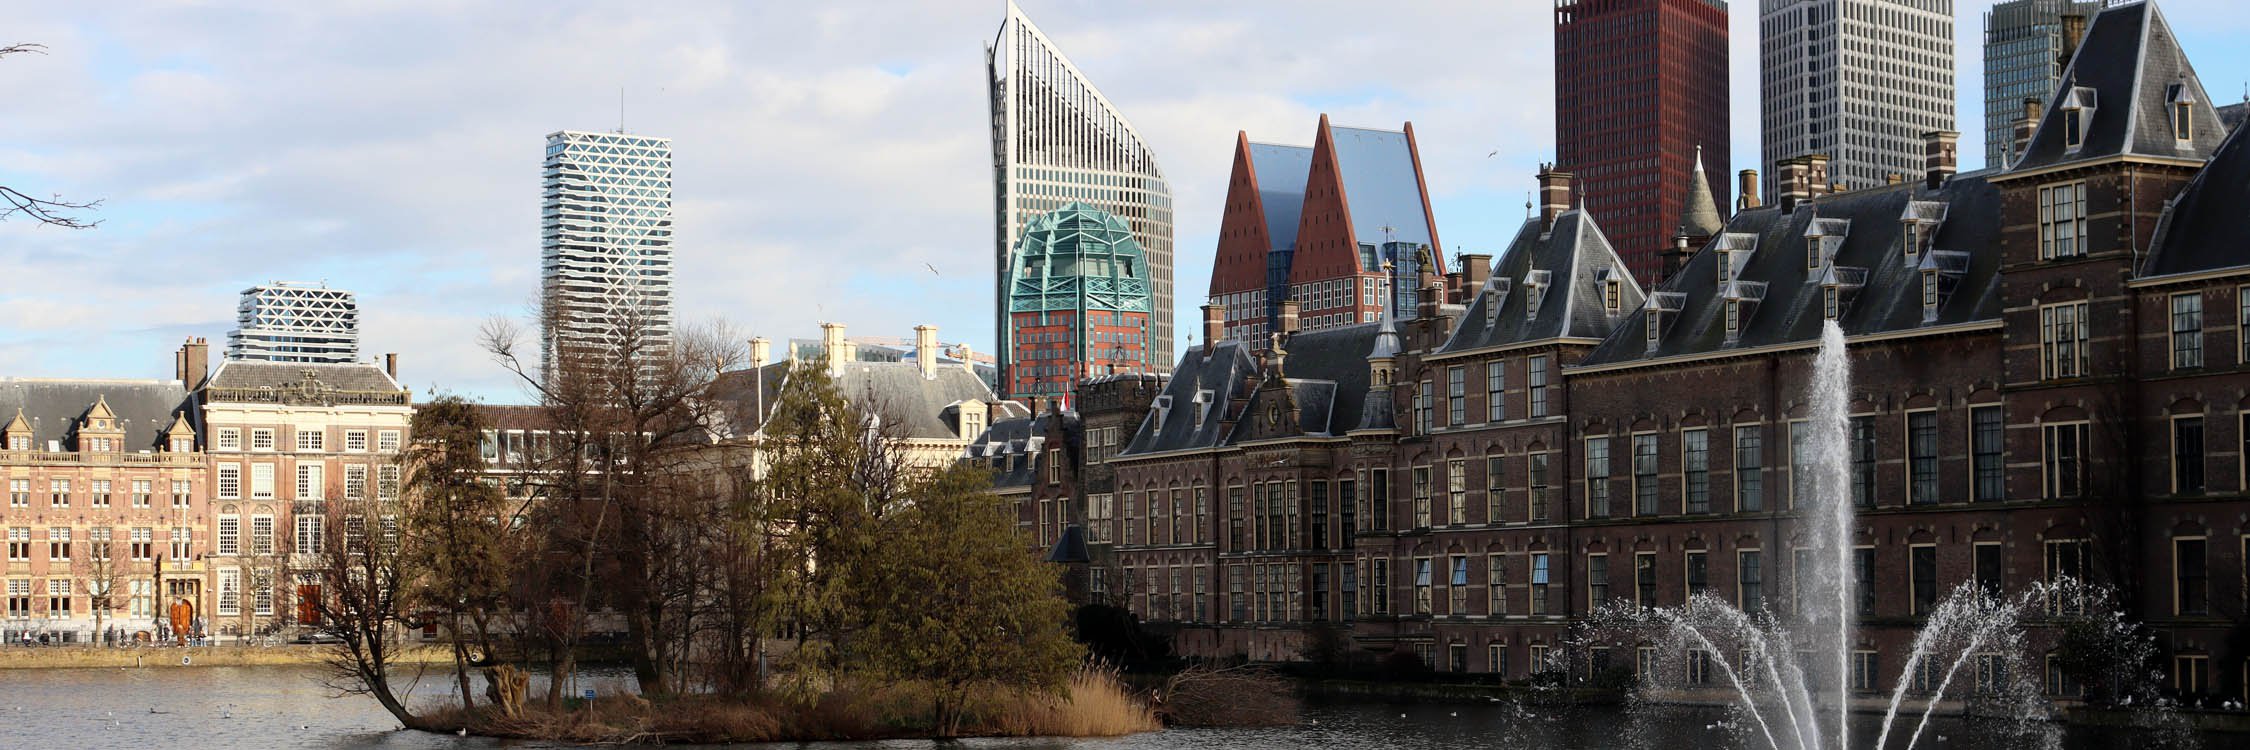 Den Haag regio City 2.jpg